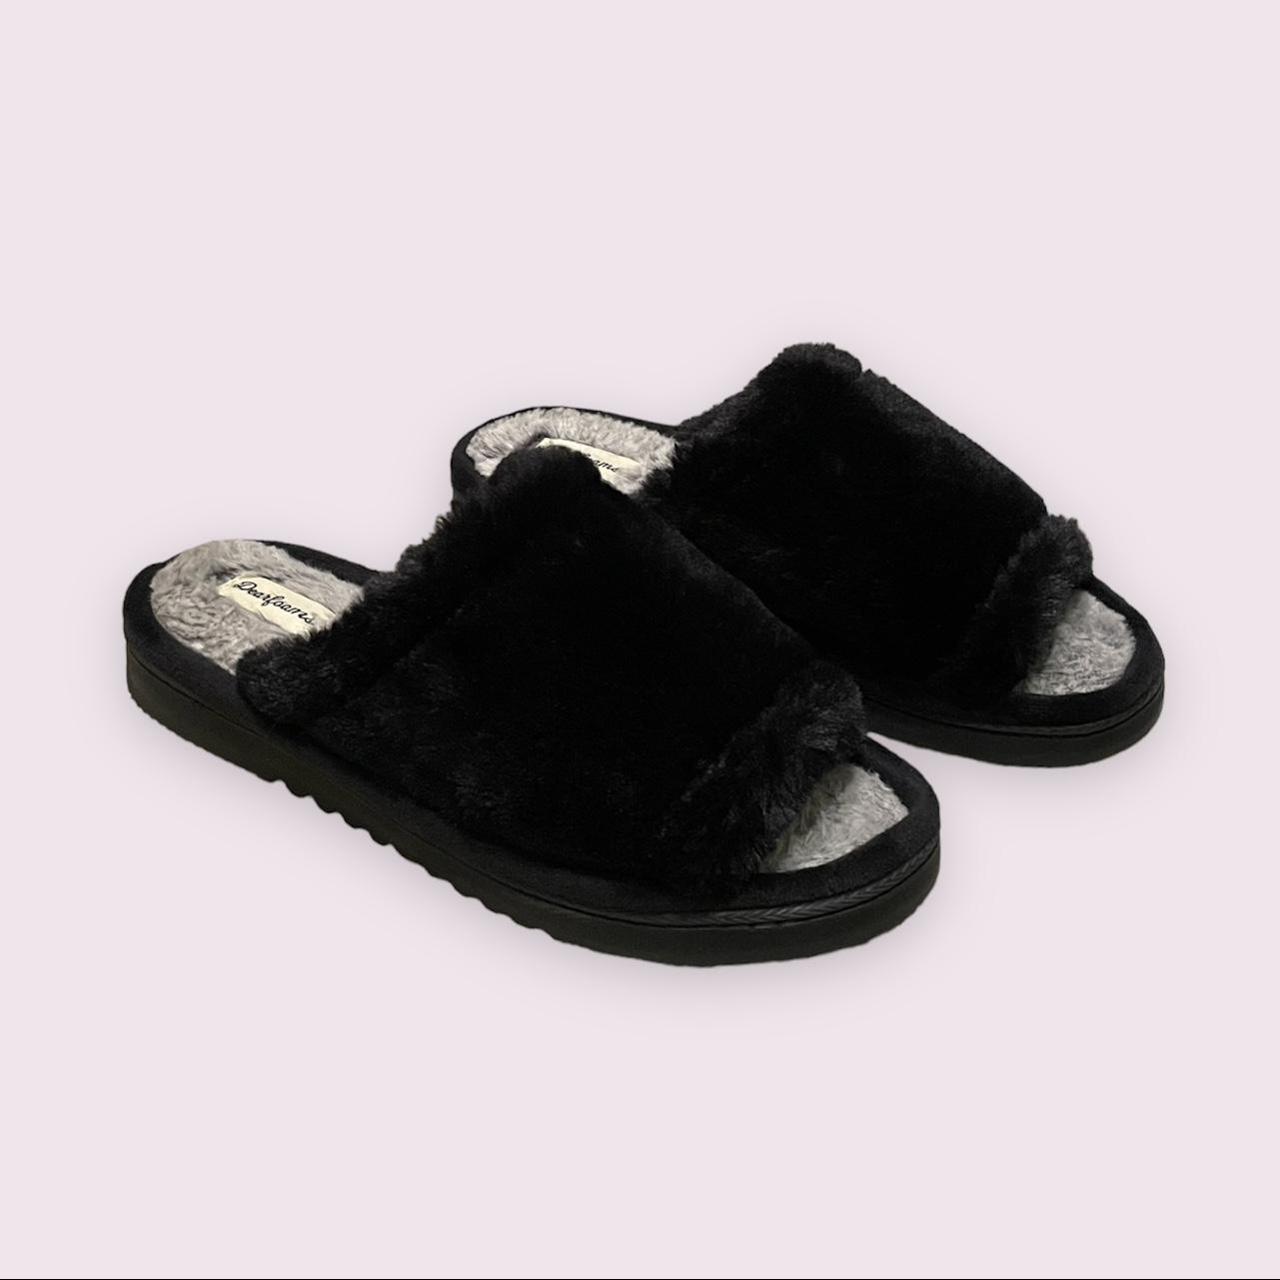 Dearfoams Women's Black and Grey Slippers